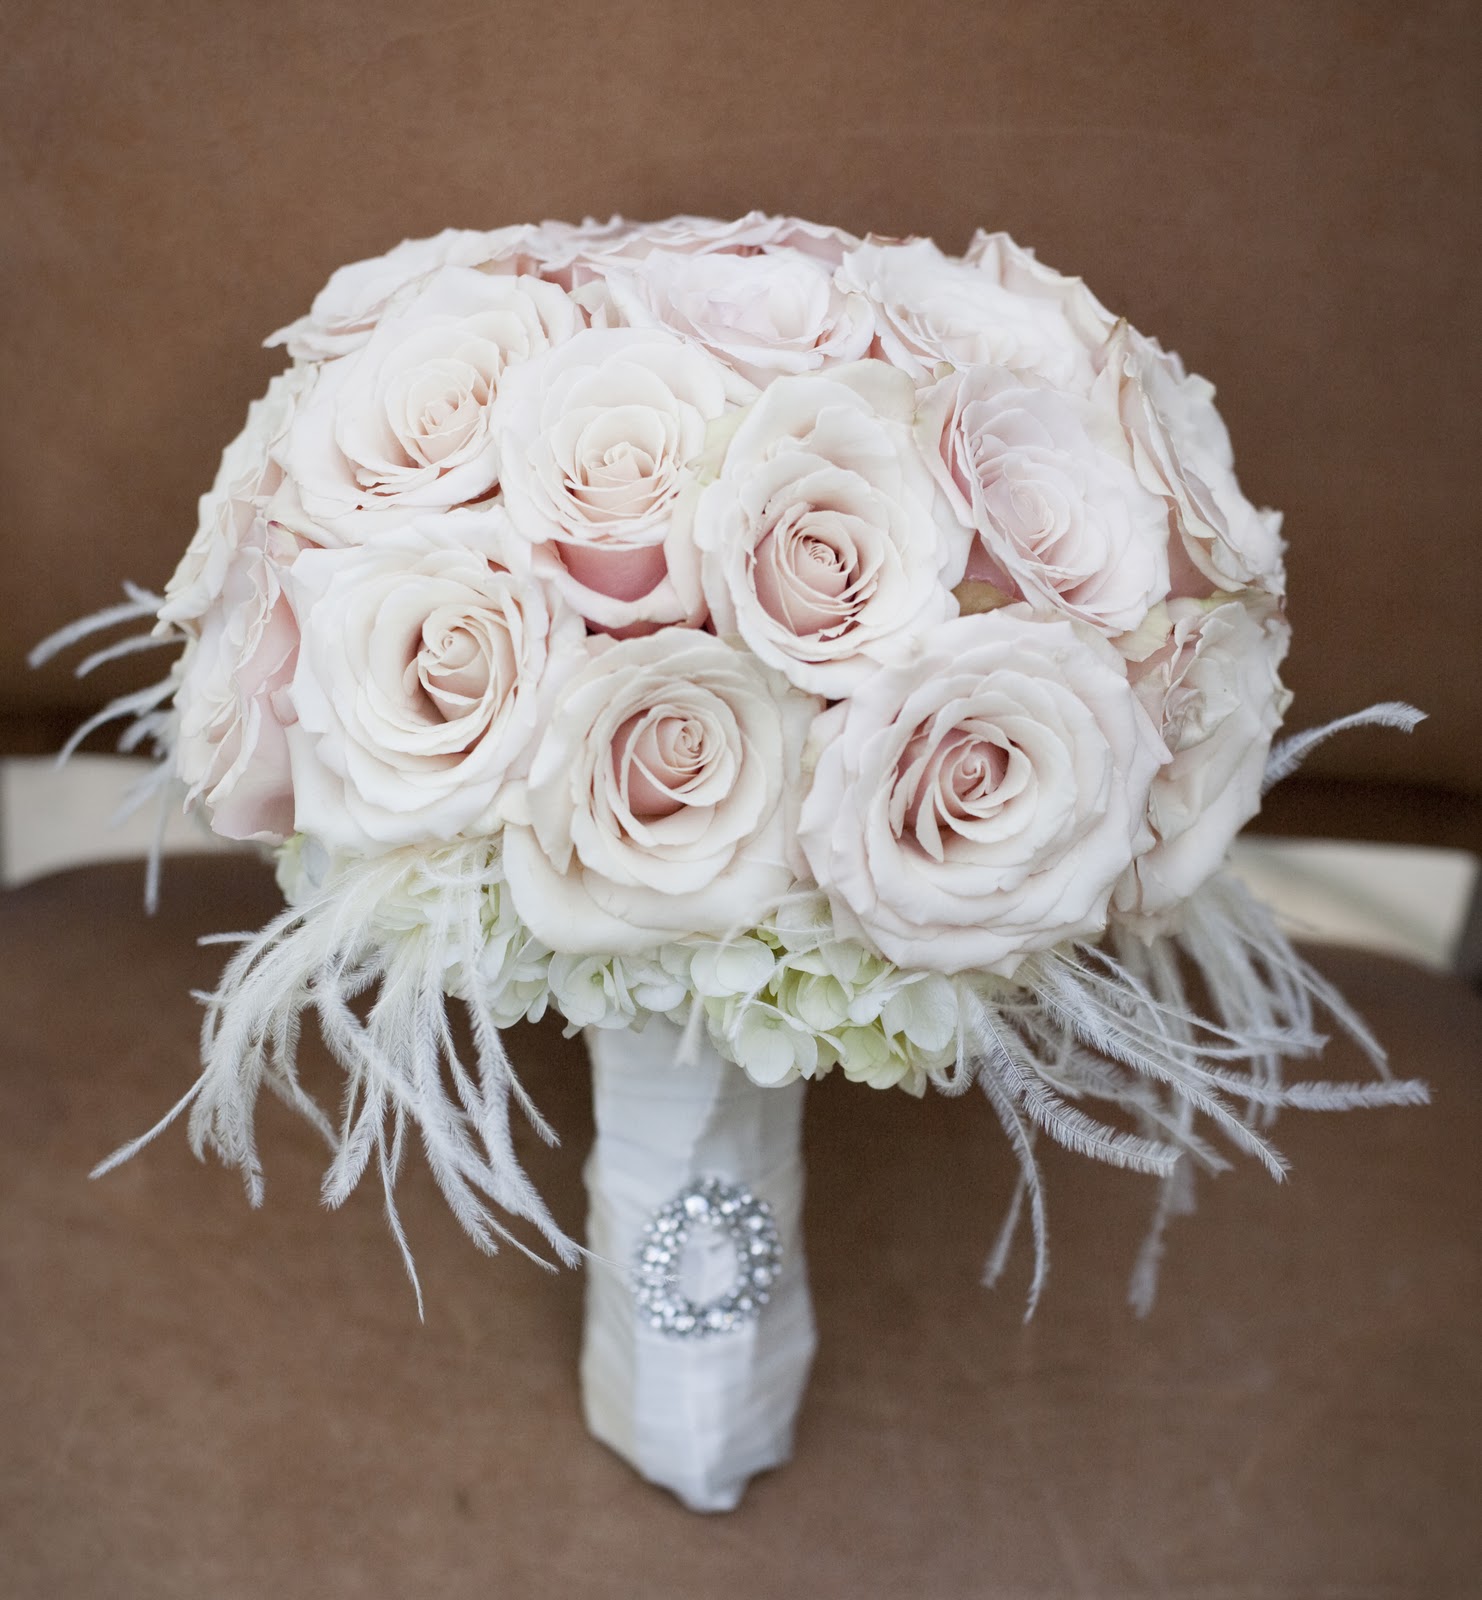 A classic bridal bouquet